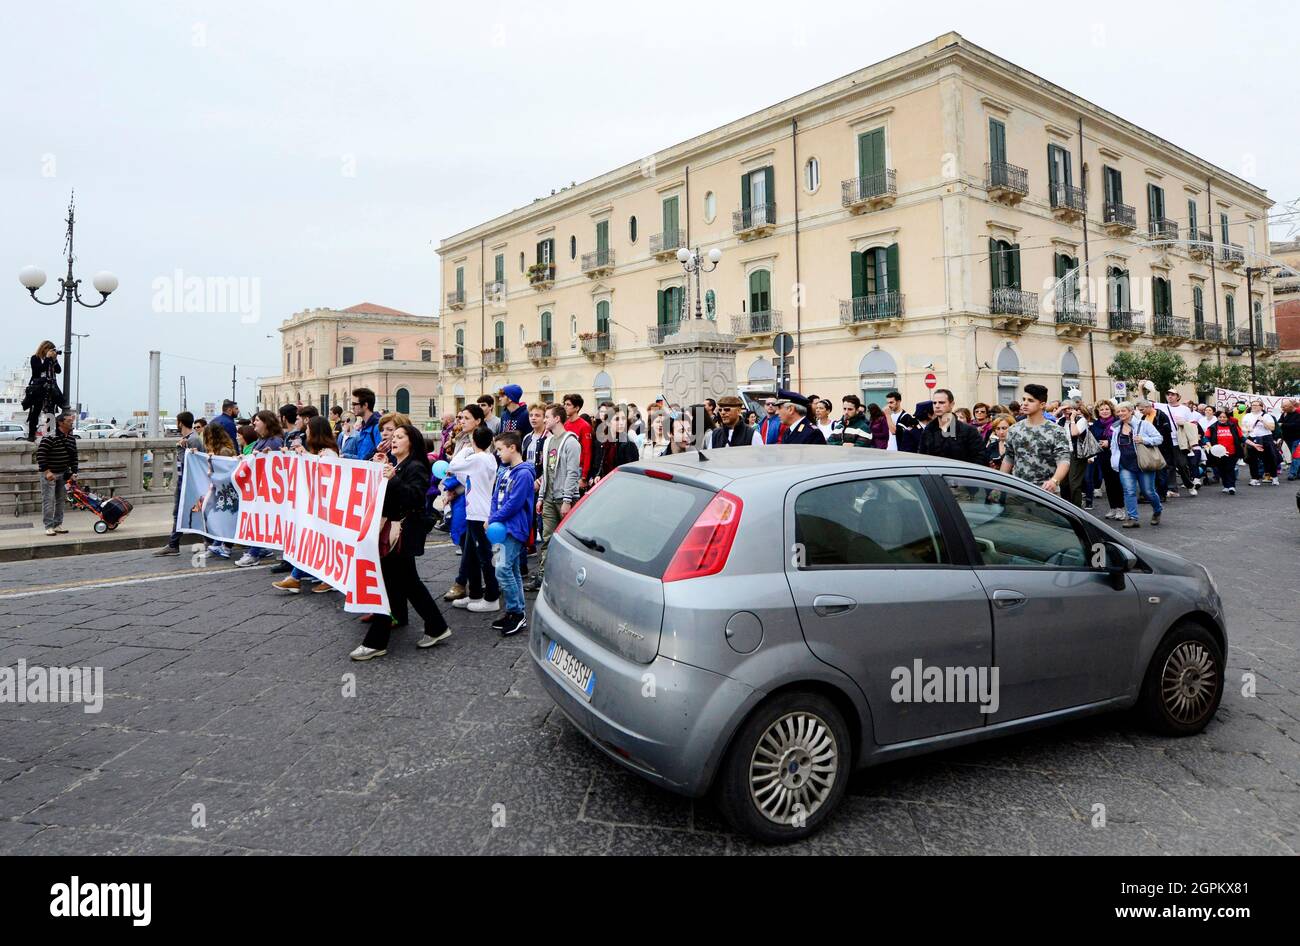 Une manifestation contre une zone industrielle à Syracuse, en Italie. Banque D'Images